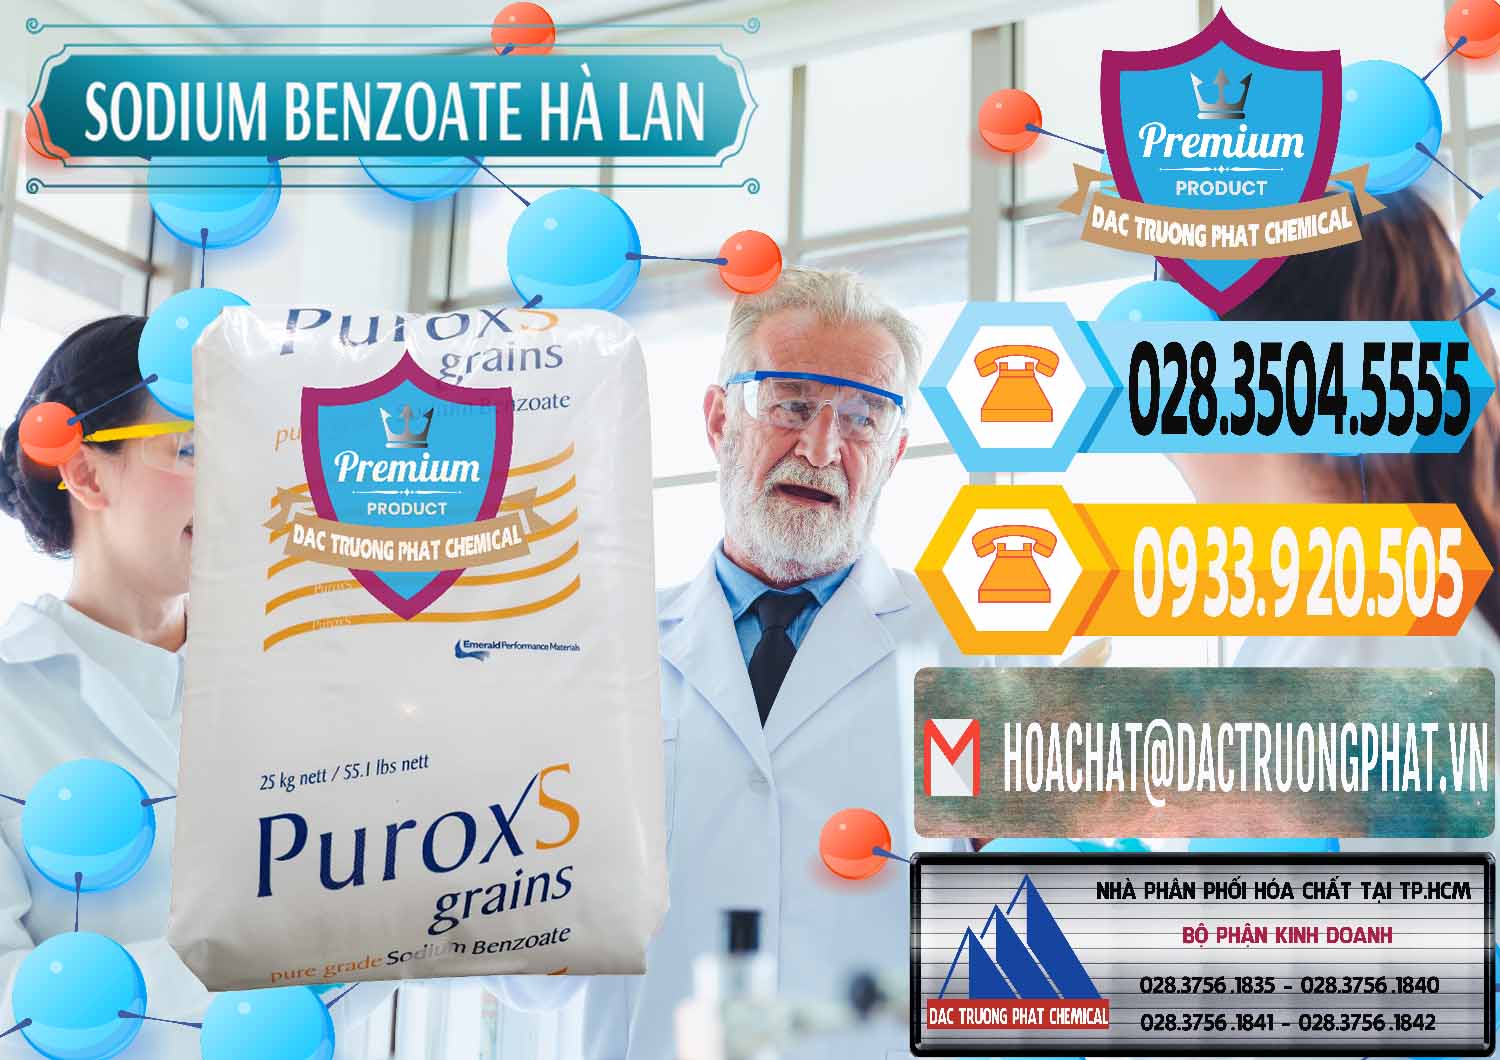 Nơi chuyên nhập khẩu _ bán Sodium Benzoate - Mốc Bột Puroxs Hà Lan Netherlands - 0467 - Cty cung cấp & phân phối hóa chất tại TP.HCM - hoachattayrua.net